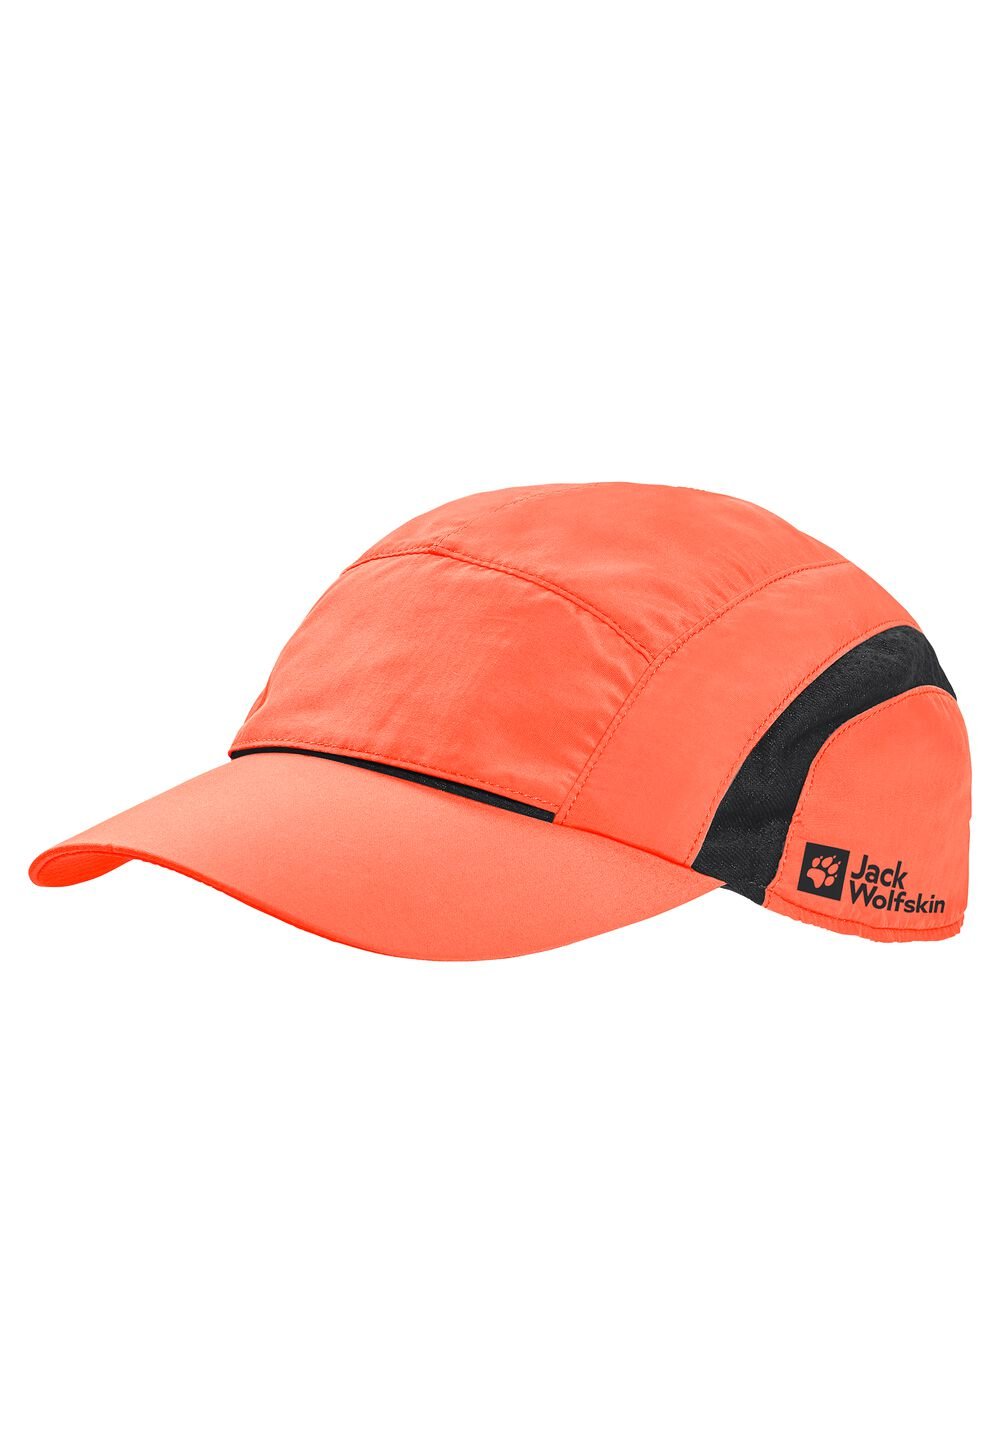 Jack Wolfskin Vent Support System Cap Basecap L rood digital orange